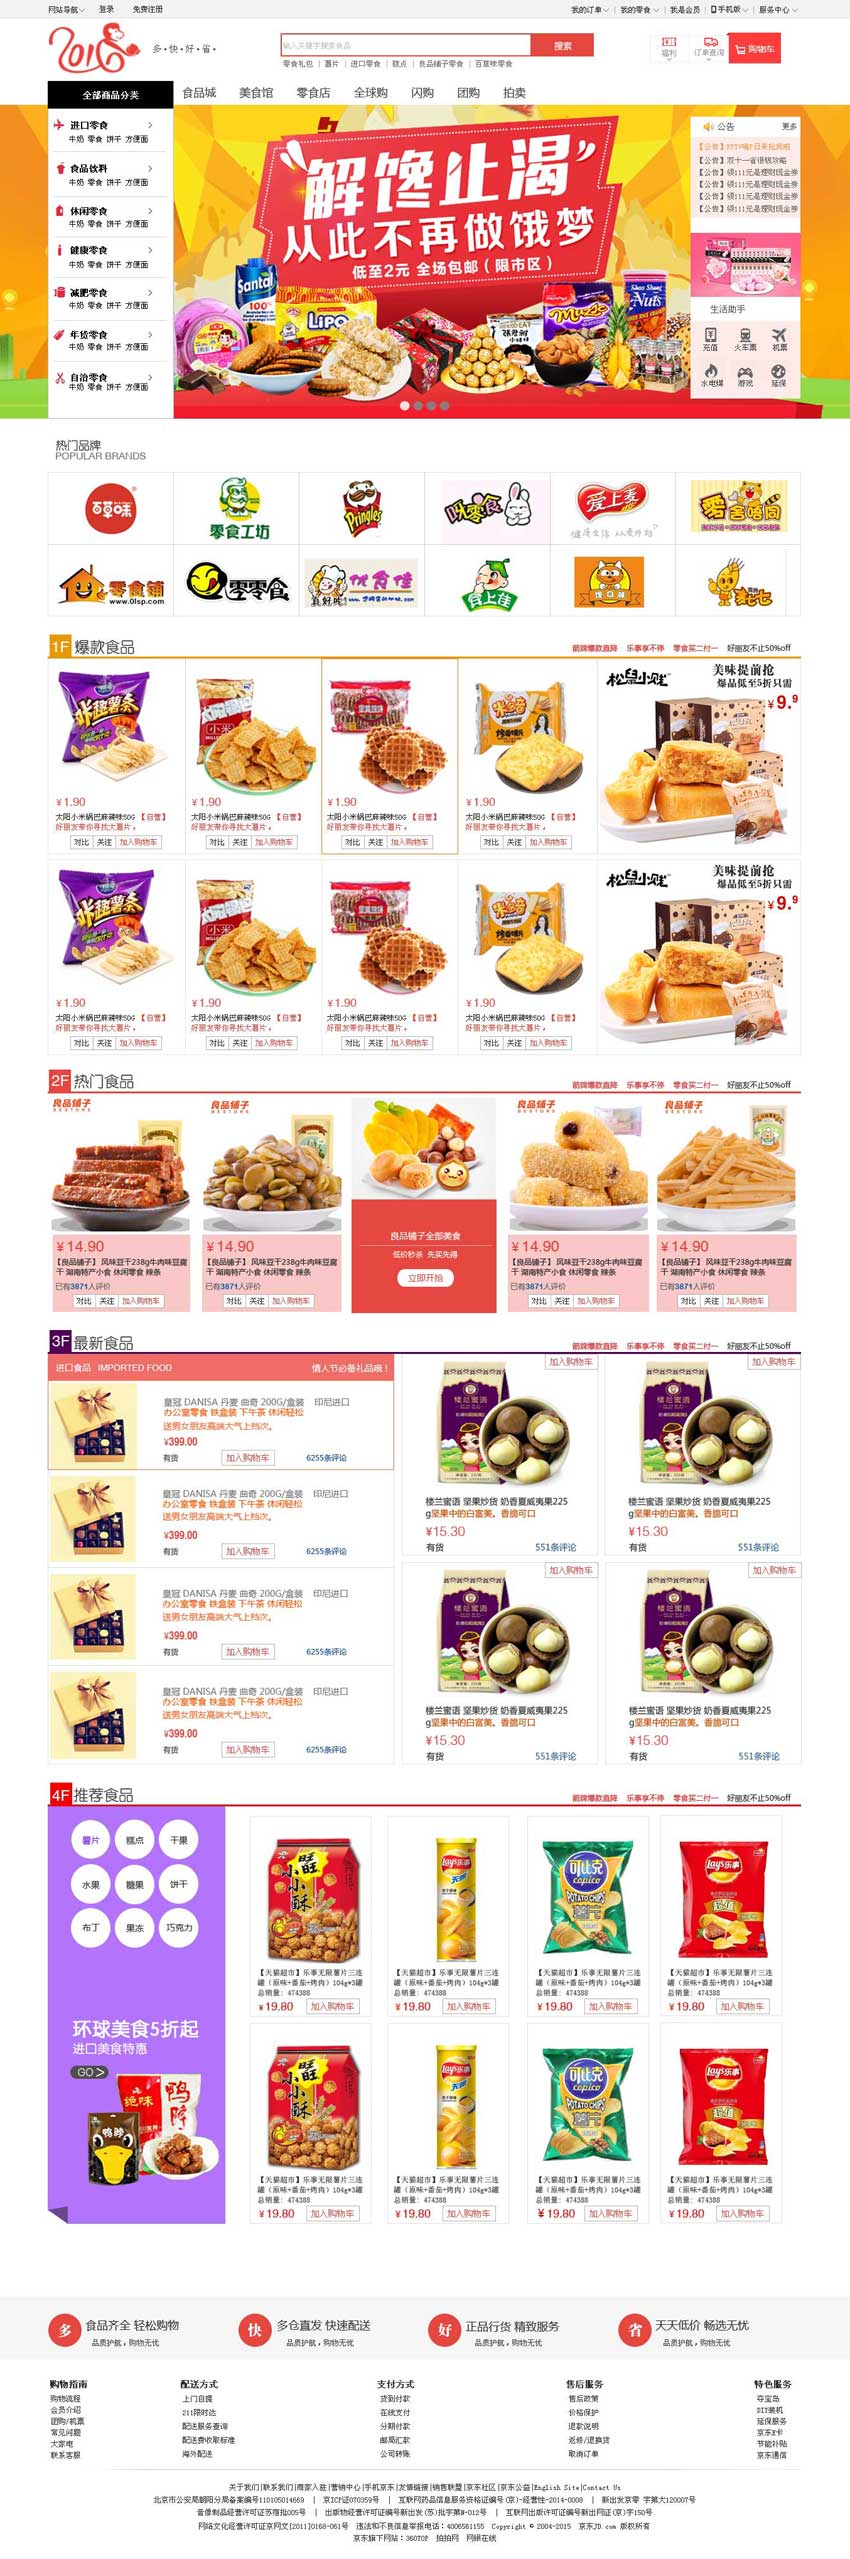 网上食品购物商城首页设计模板